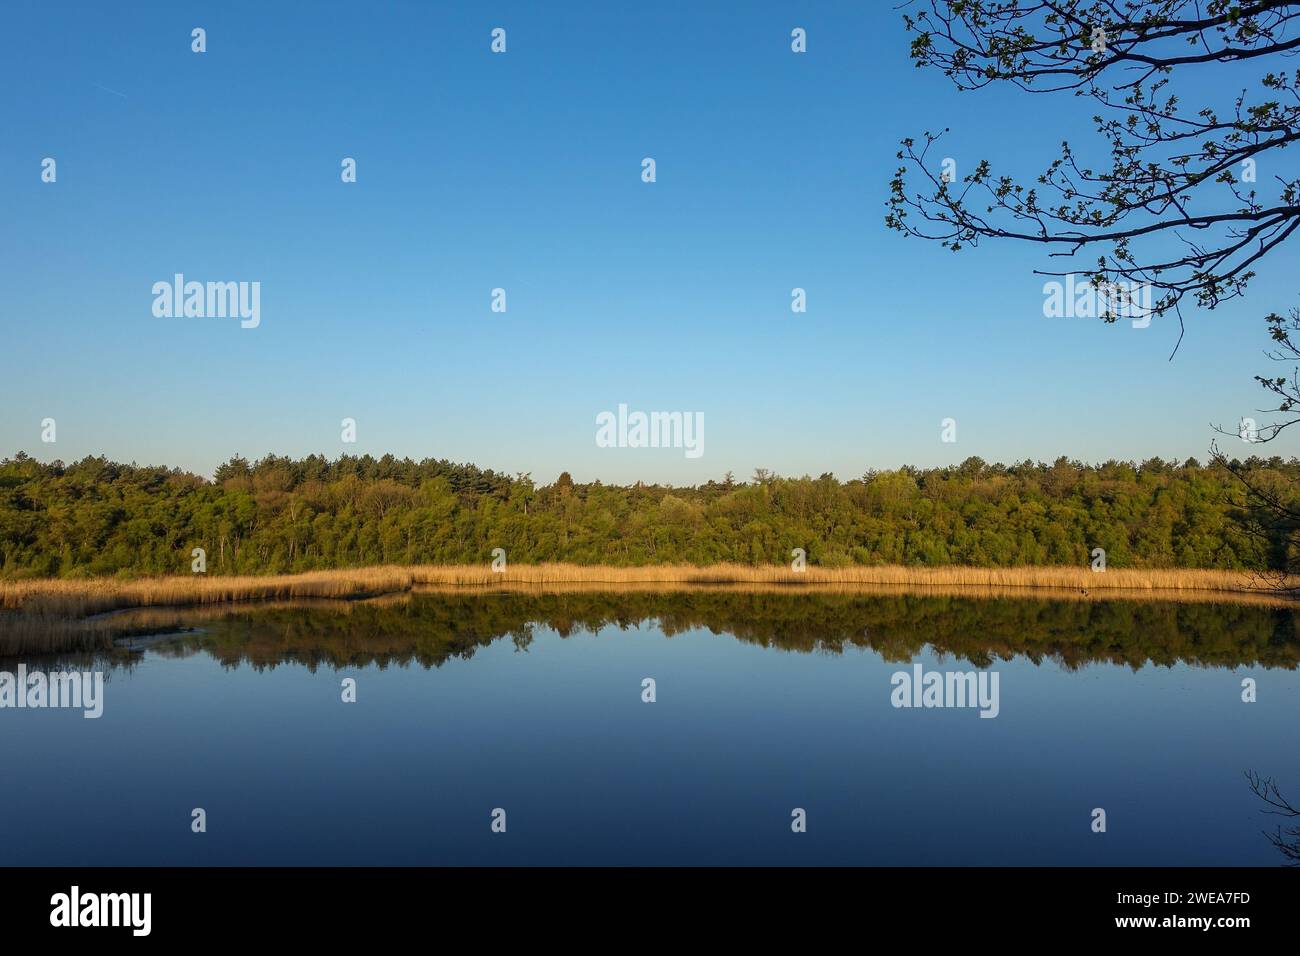 Tranquillo lago nel nord del Belgio a ore d'oro con cielo azzurro e alberi che si riflettono su acque calme, evocando pace e tranquillità Foto Stock